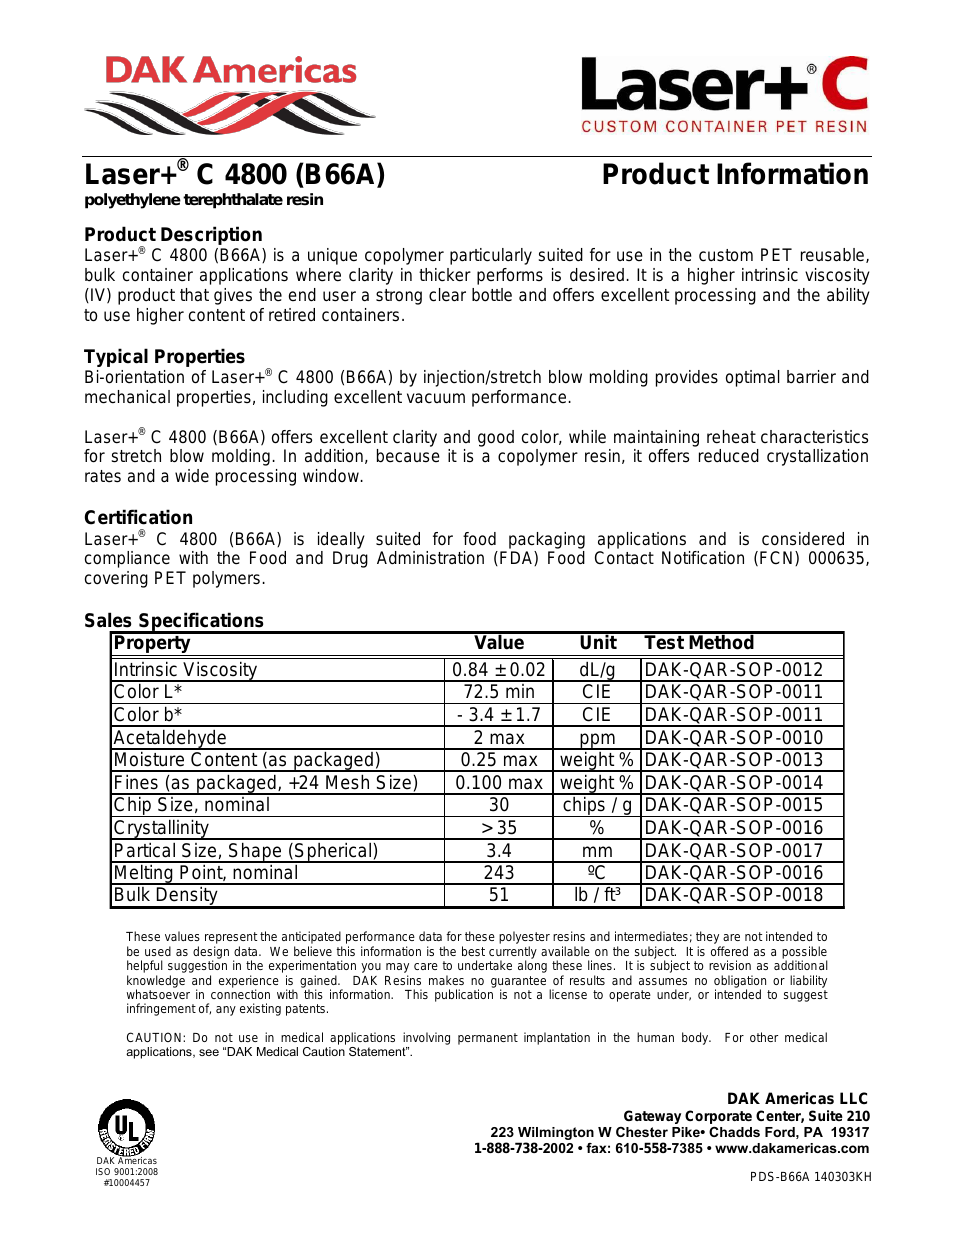 Laser+ C 4800 B66A